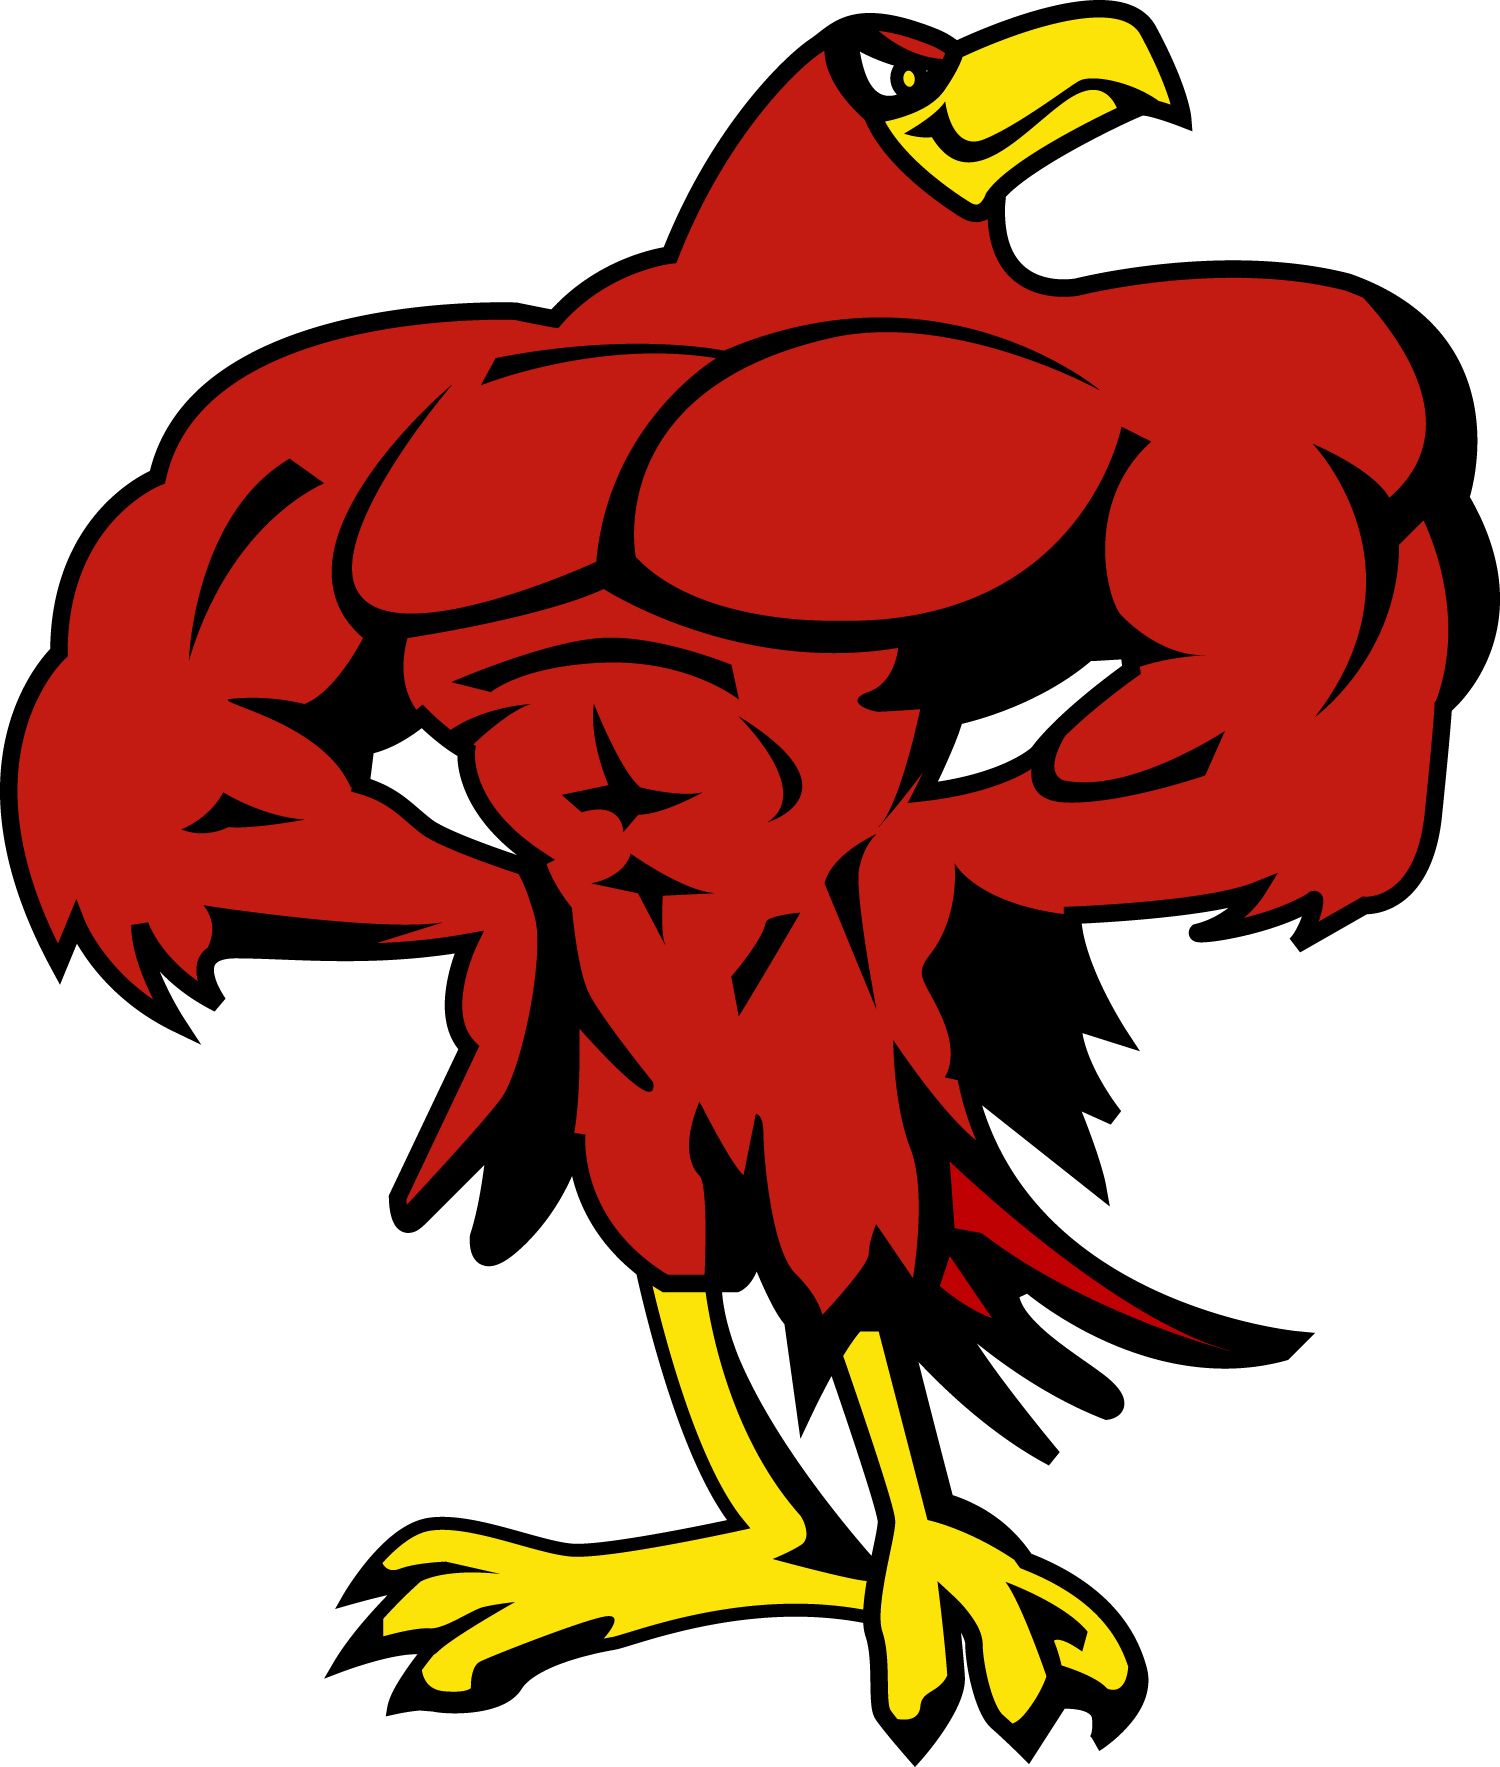 Falcon mascot 2019.